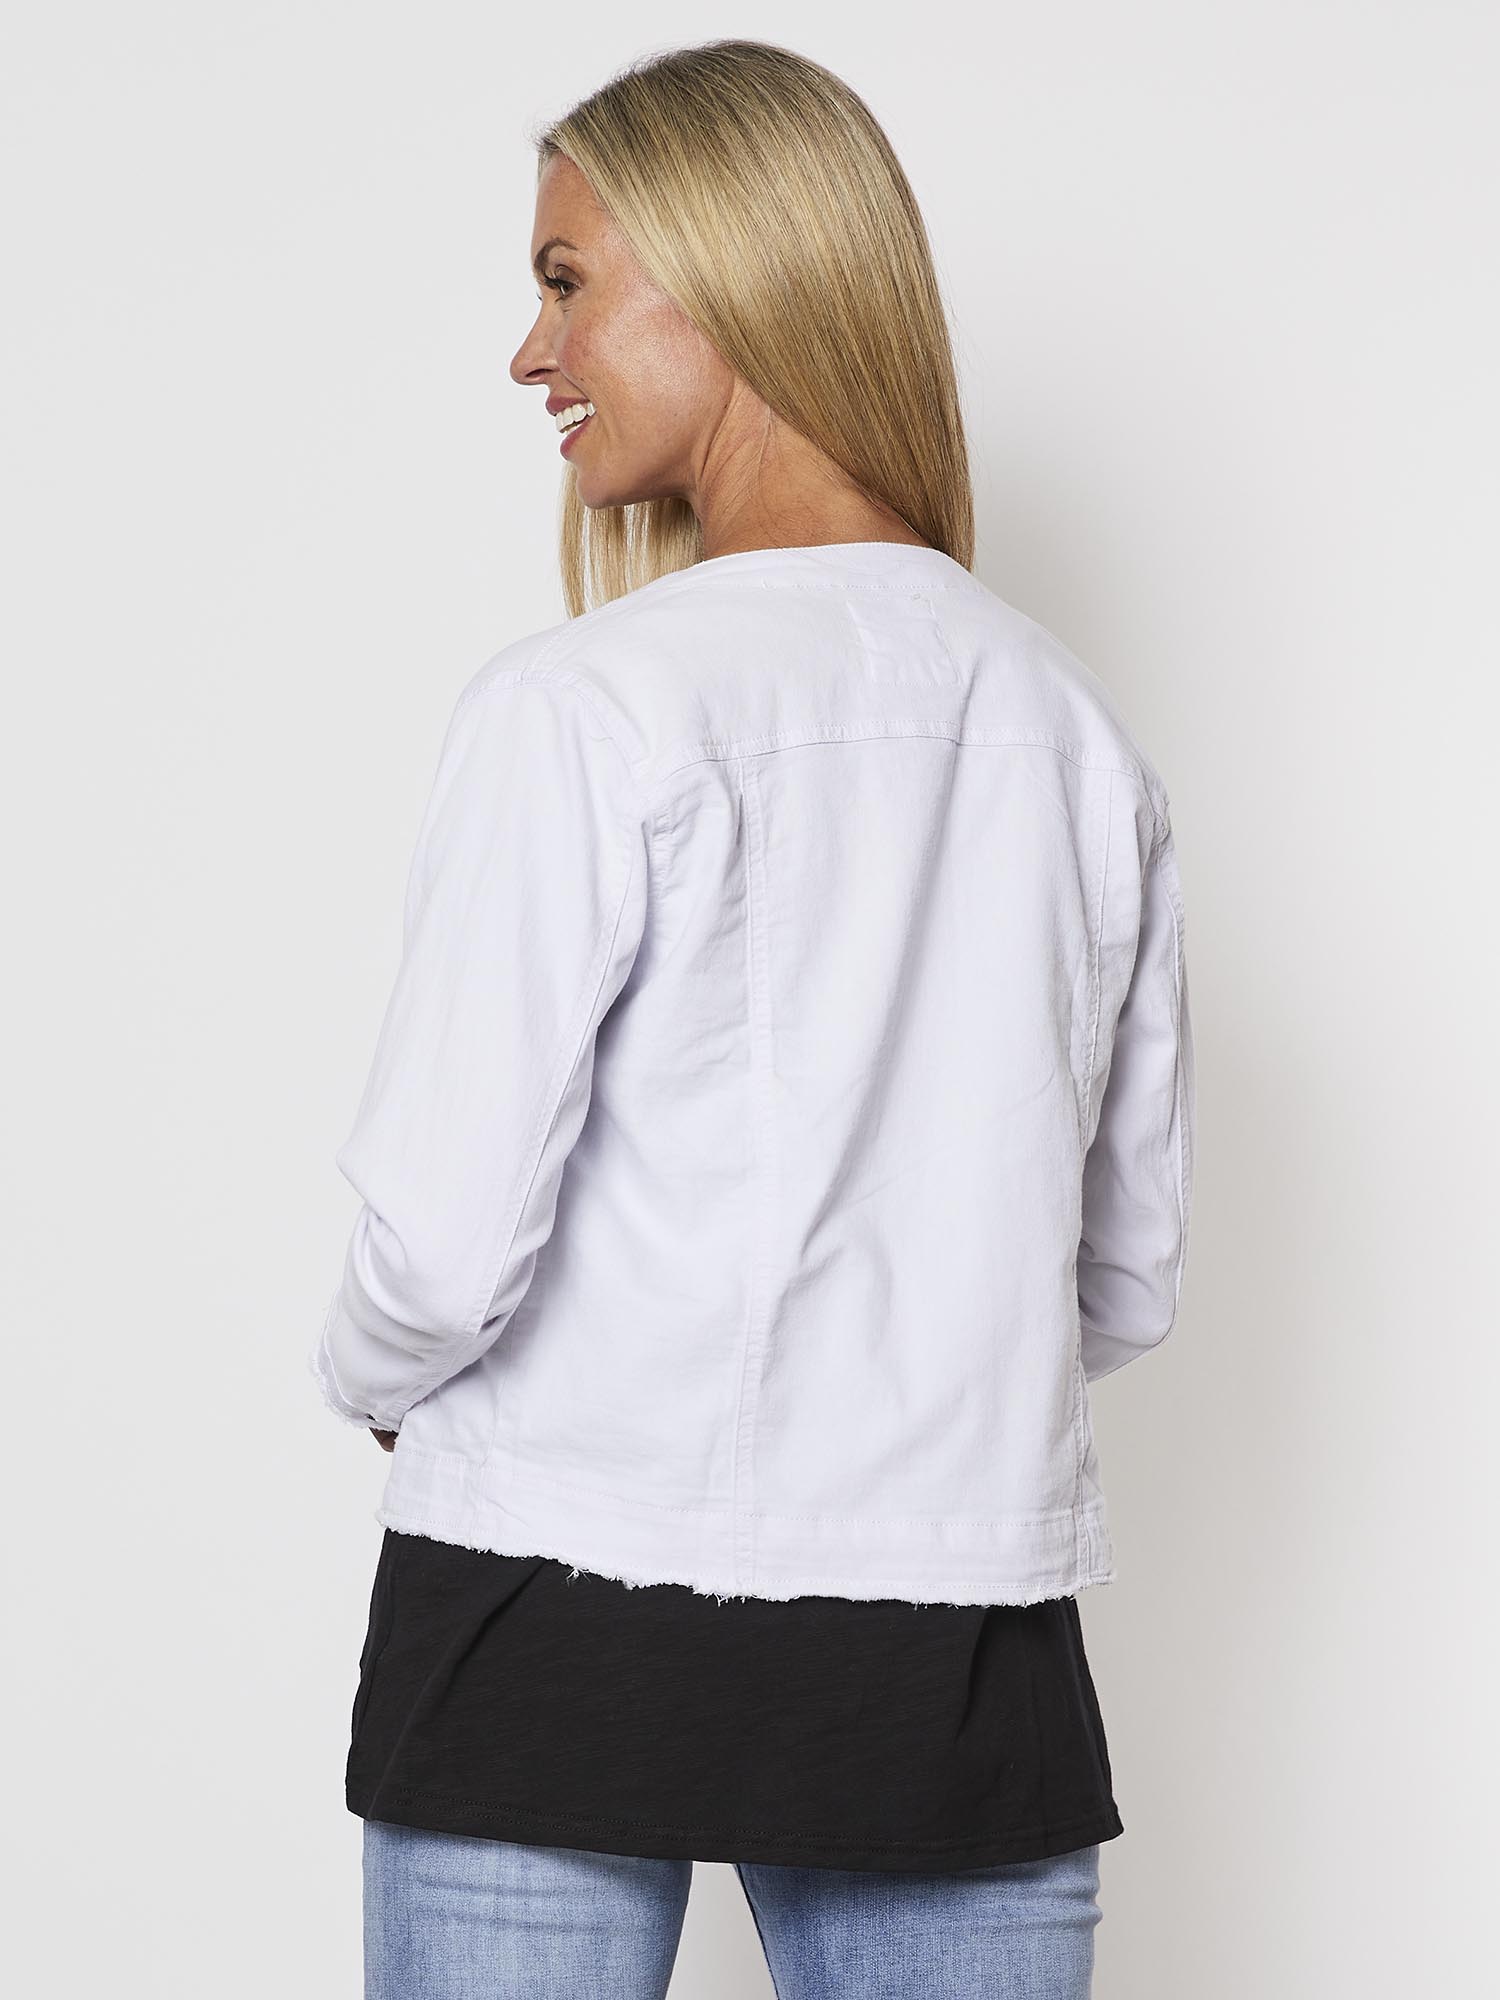 Unique Bargains Women's Plus Size Long Sleeve Collarless Outerwear Denim  Jacket - Walmart.com